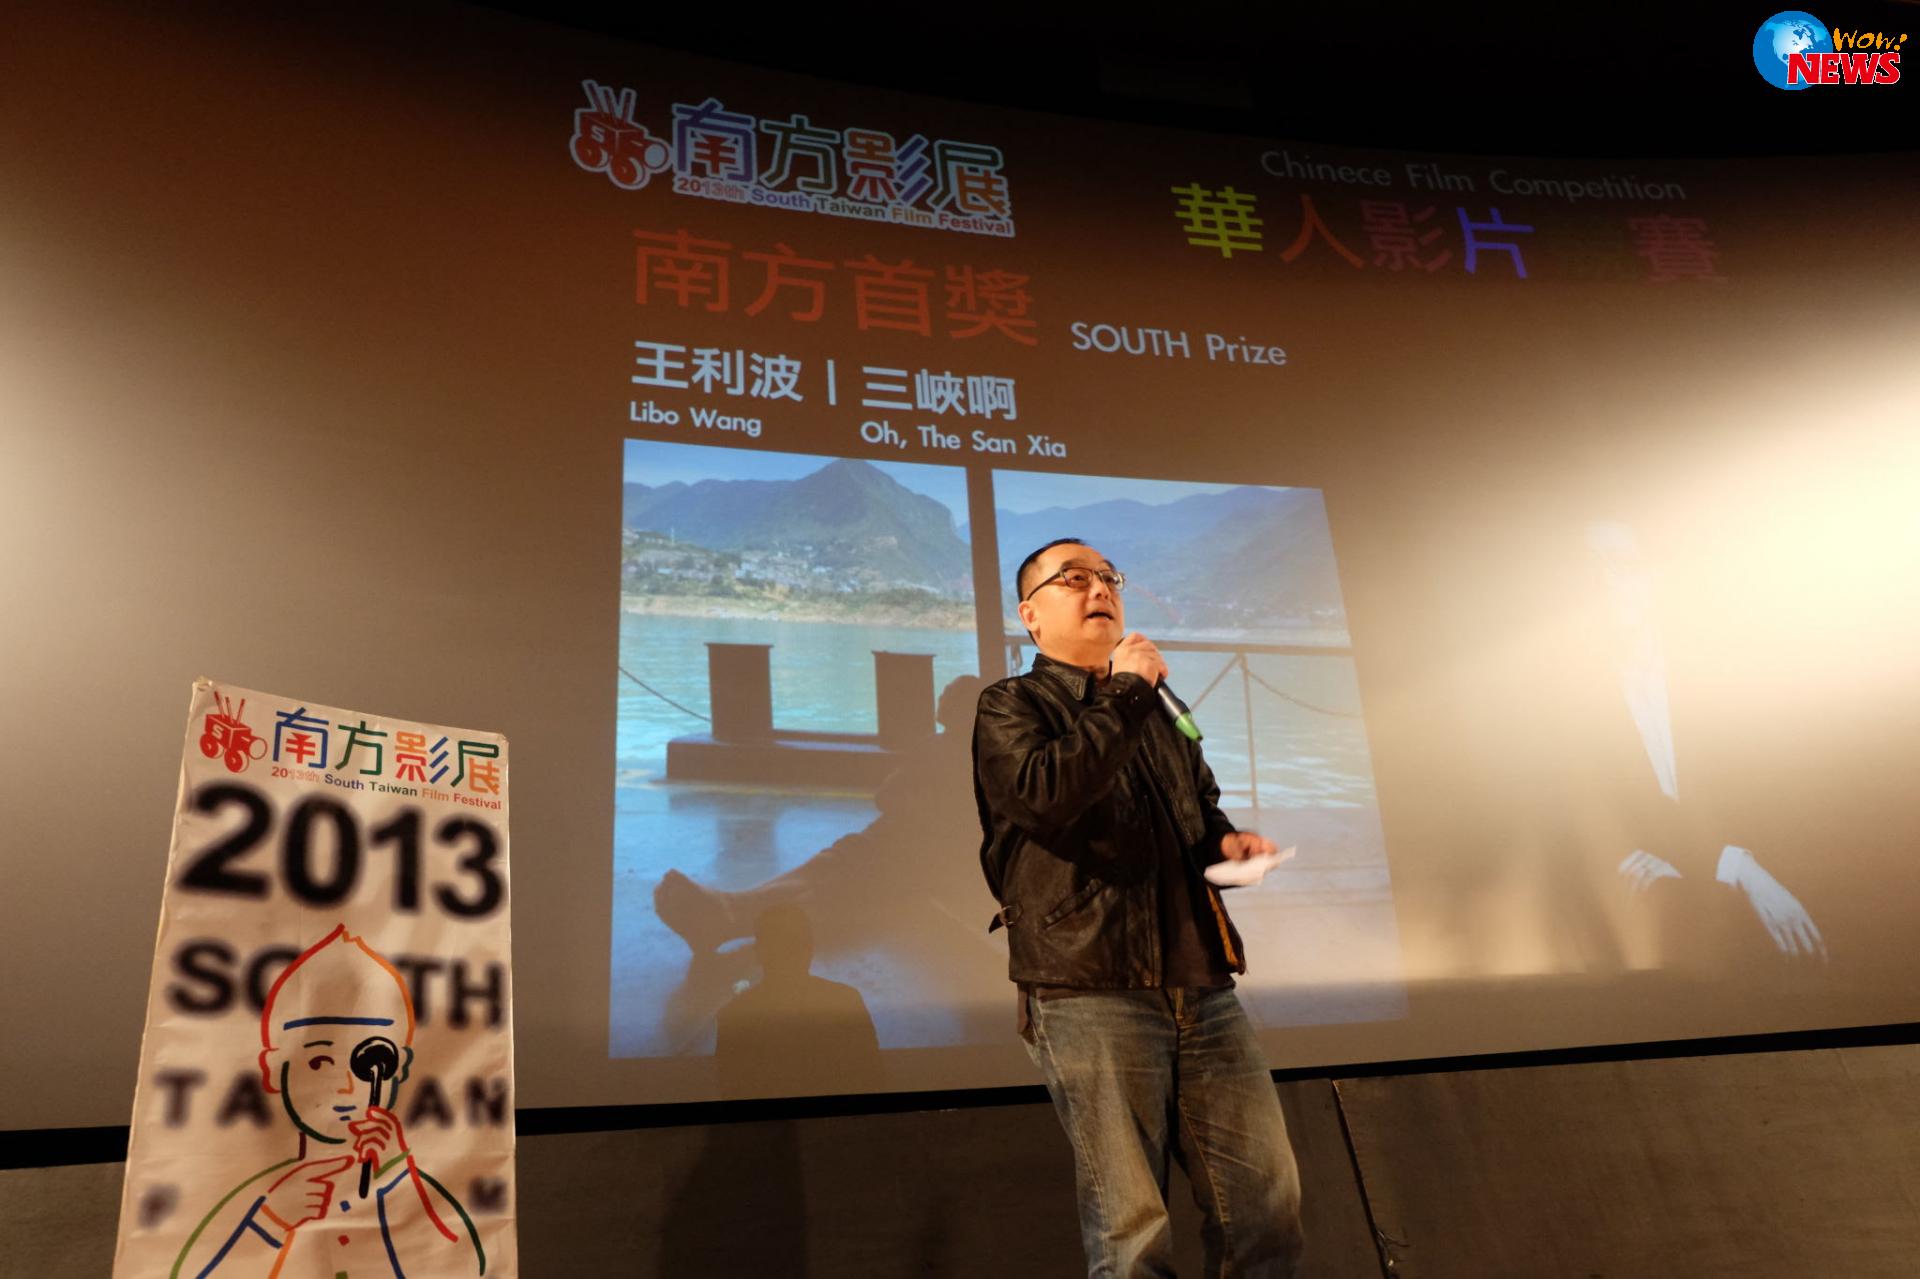 2014南方影展全球华人影片竞赛 开始徵件 | W